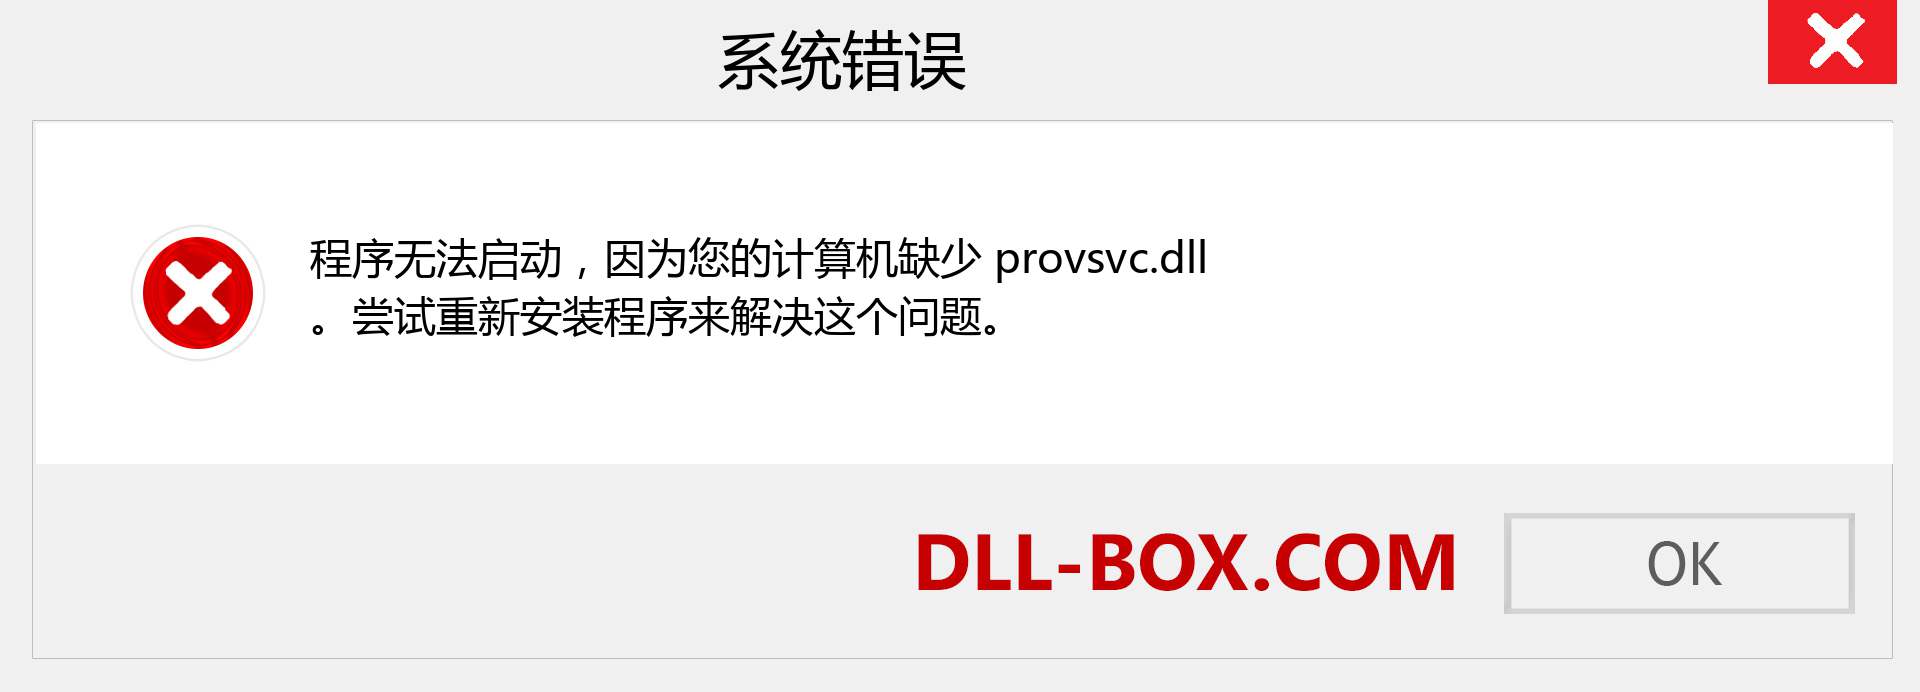 provsvc.dll 文件丢失？。 适用于 Windows 7、8、10 的下载 - 修复 Windows、照片、图像上的 provsvc dll 丢失错误